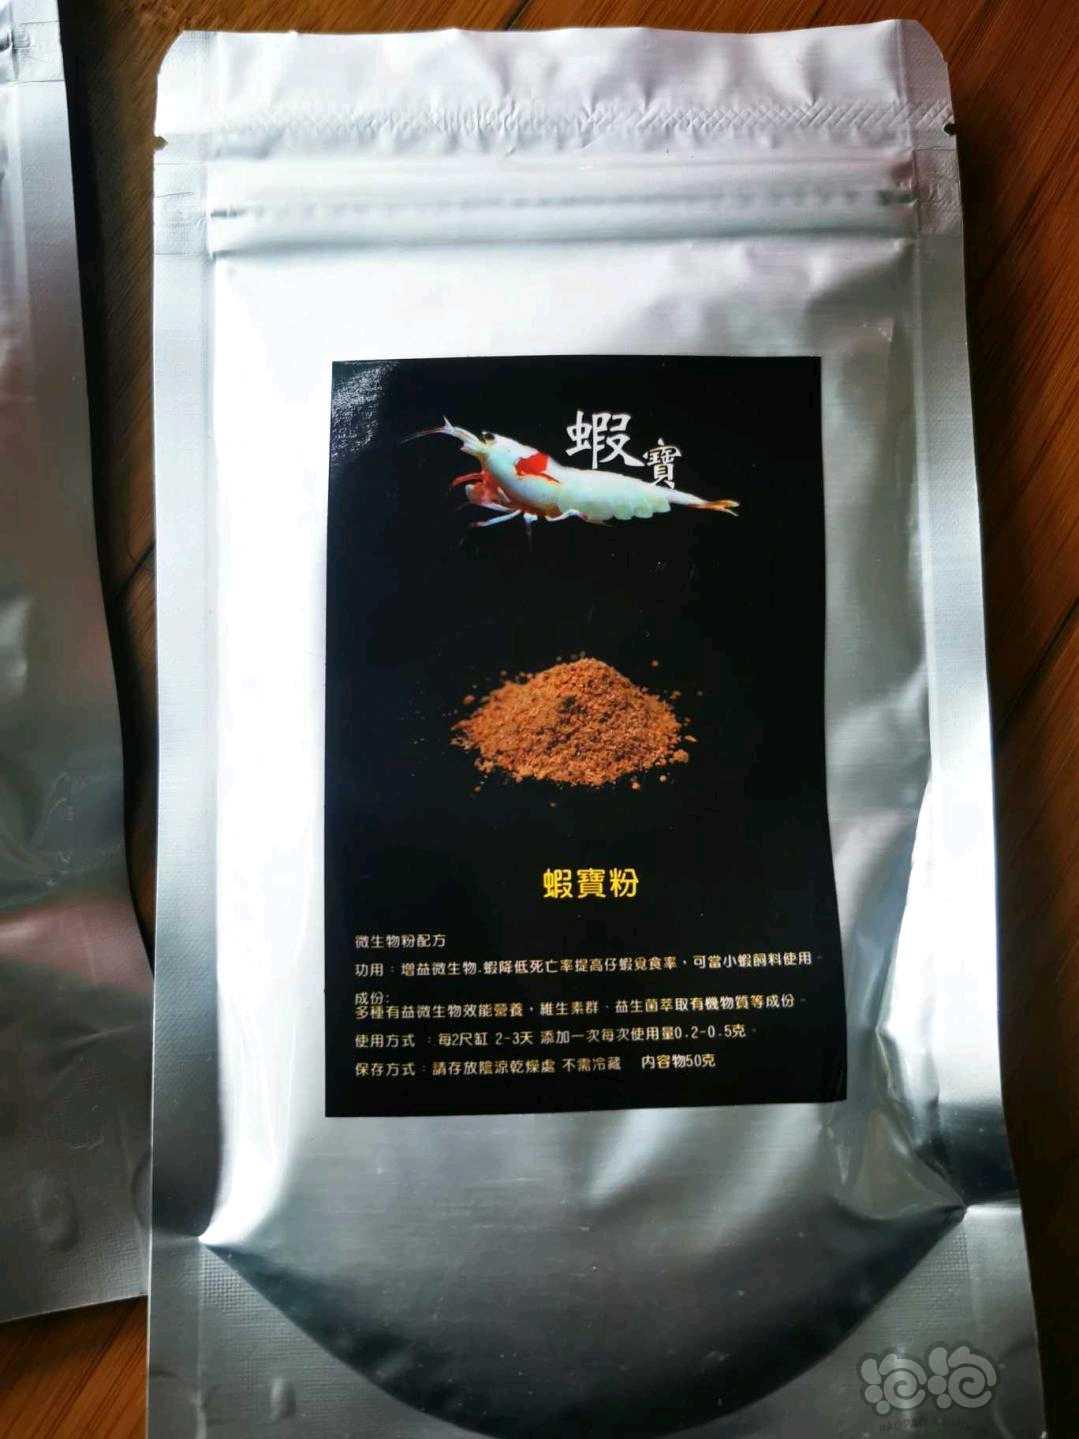 出水晶虾专业产品台湾森林叔叔虾五宝-图3